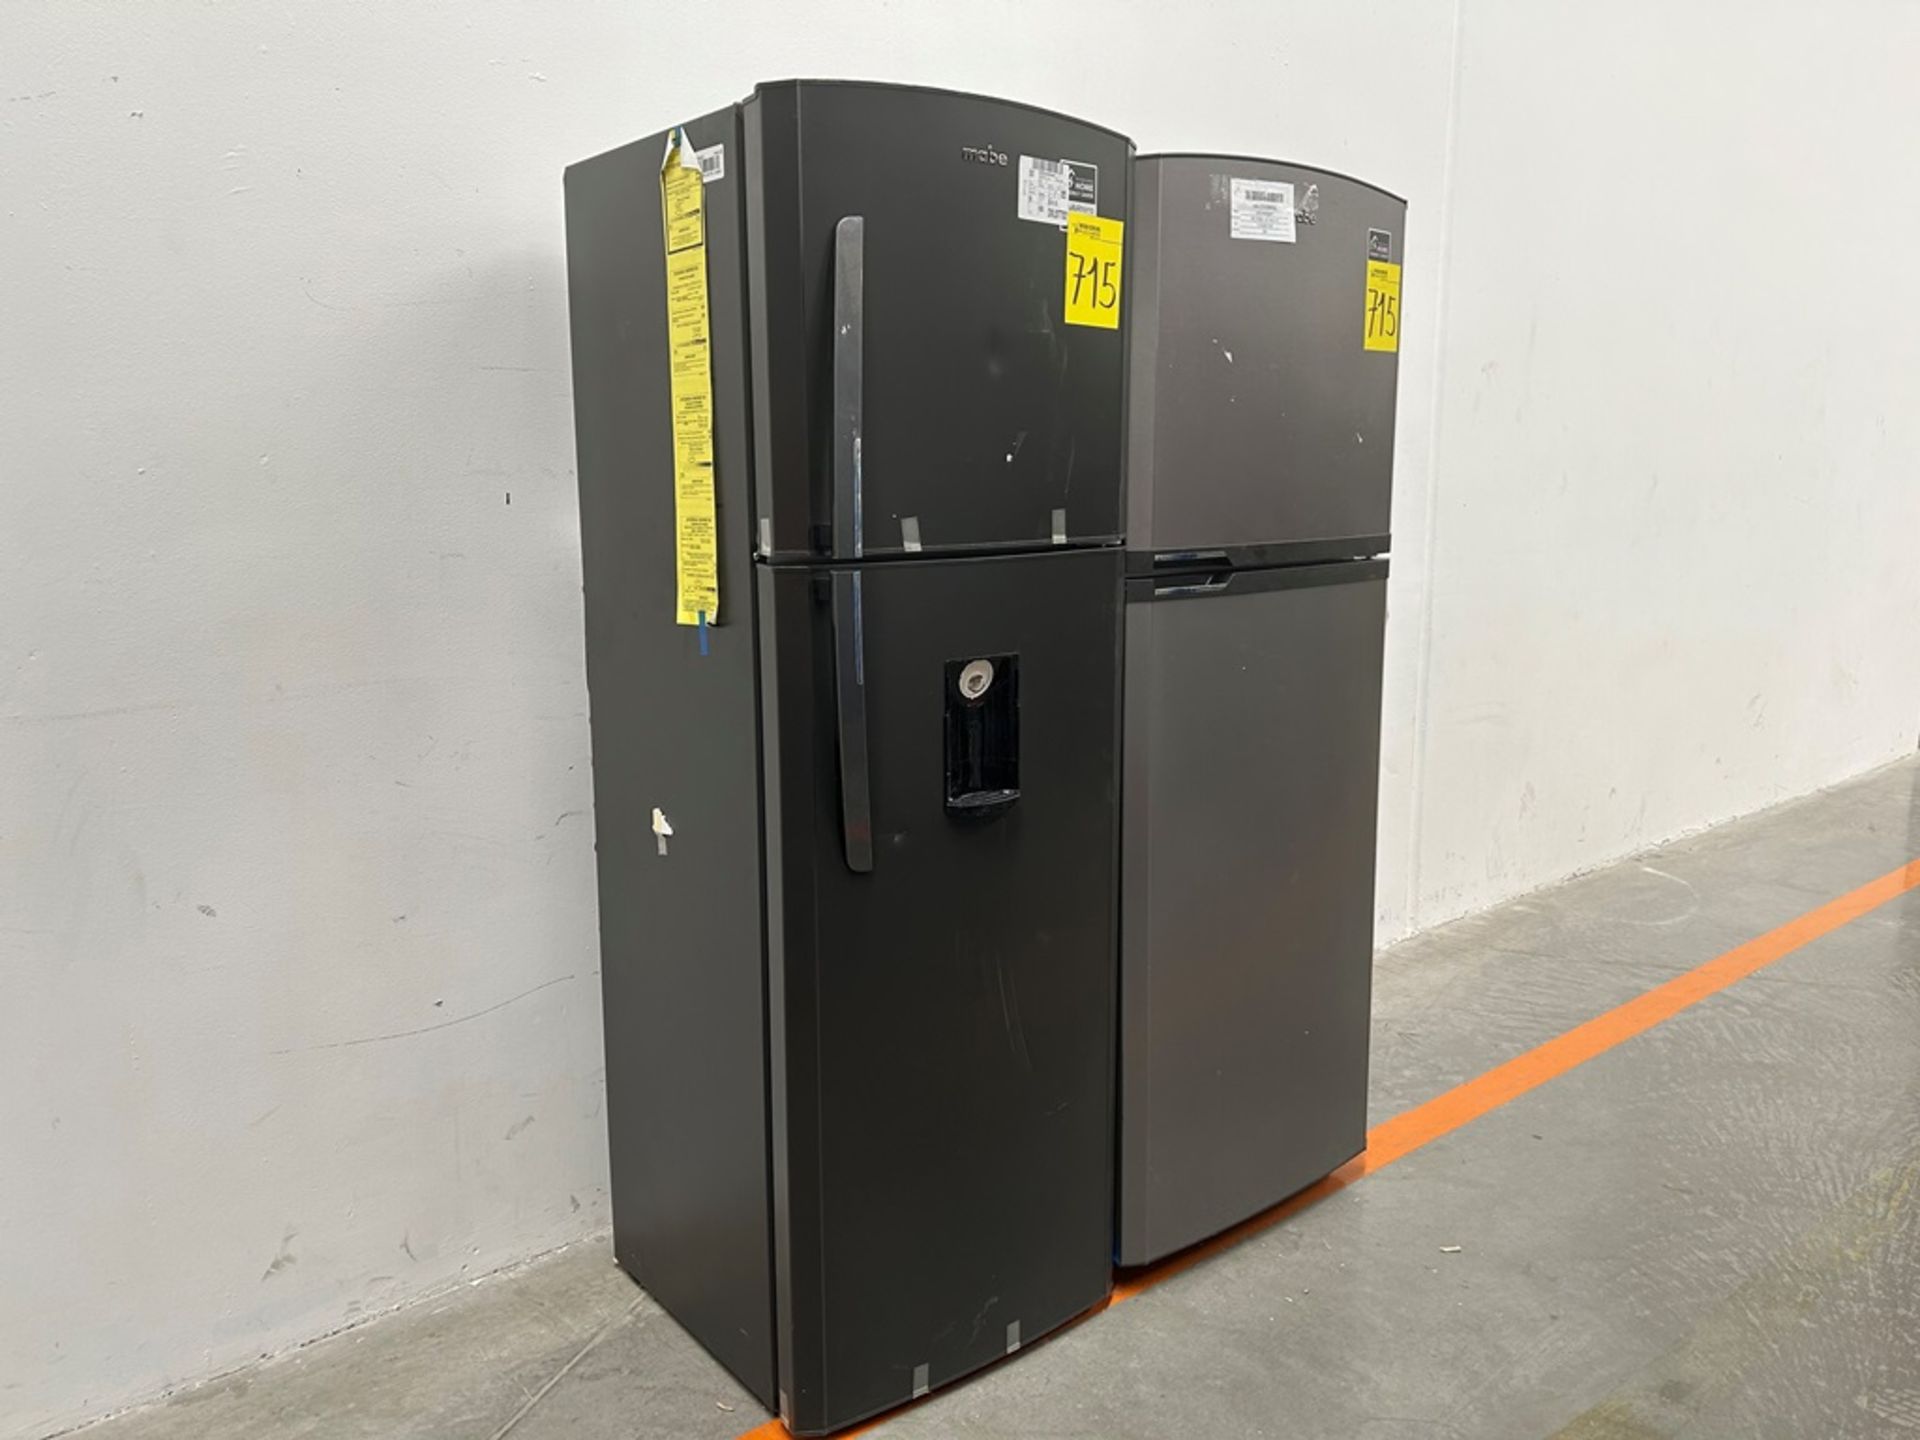 Lote de 2 refrigeradores contiene: 1 refrigerador Marca MABE, Modelo RME360FVMRMA, Serie 816455, Co - Image 3 of 18